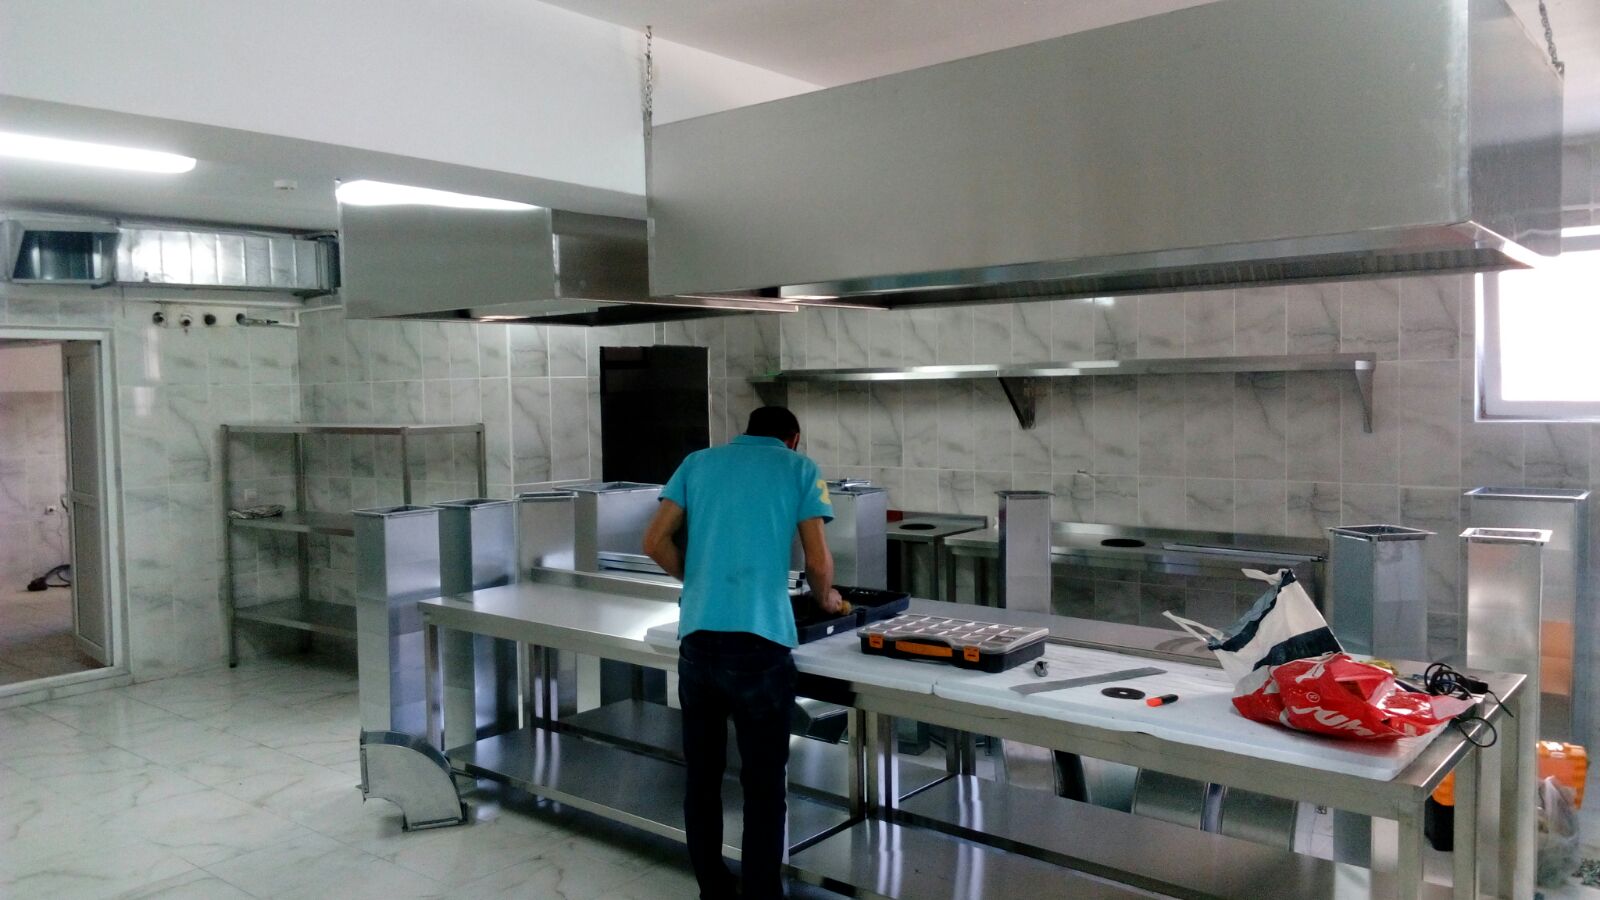   İnox endüstriyel mutfak krom pişirme ocağı ve krom duvar tipi davlumbaz , havalandırma sistemi bağlantısı Ankara Ostim İvedik 0549 549 76 09